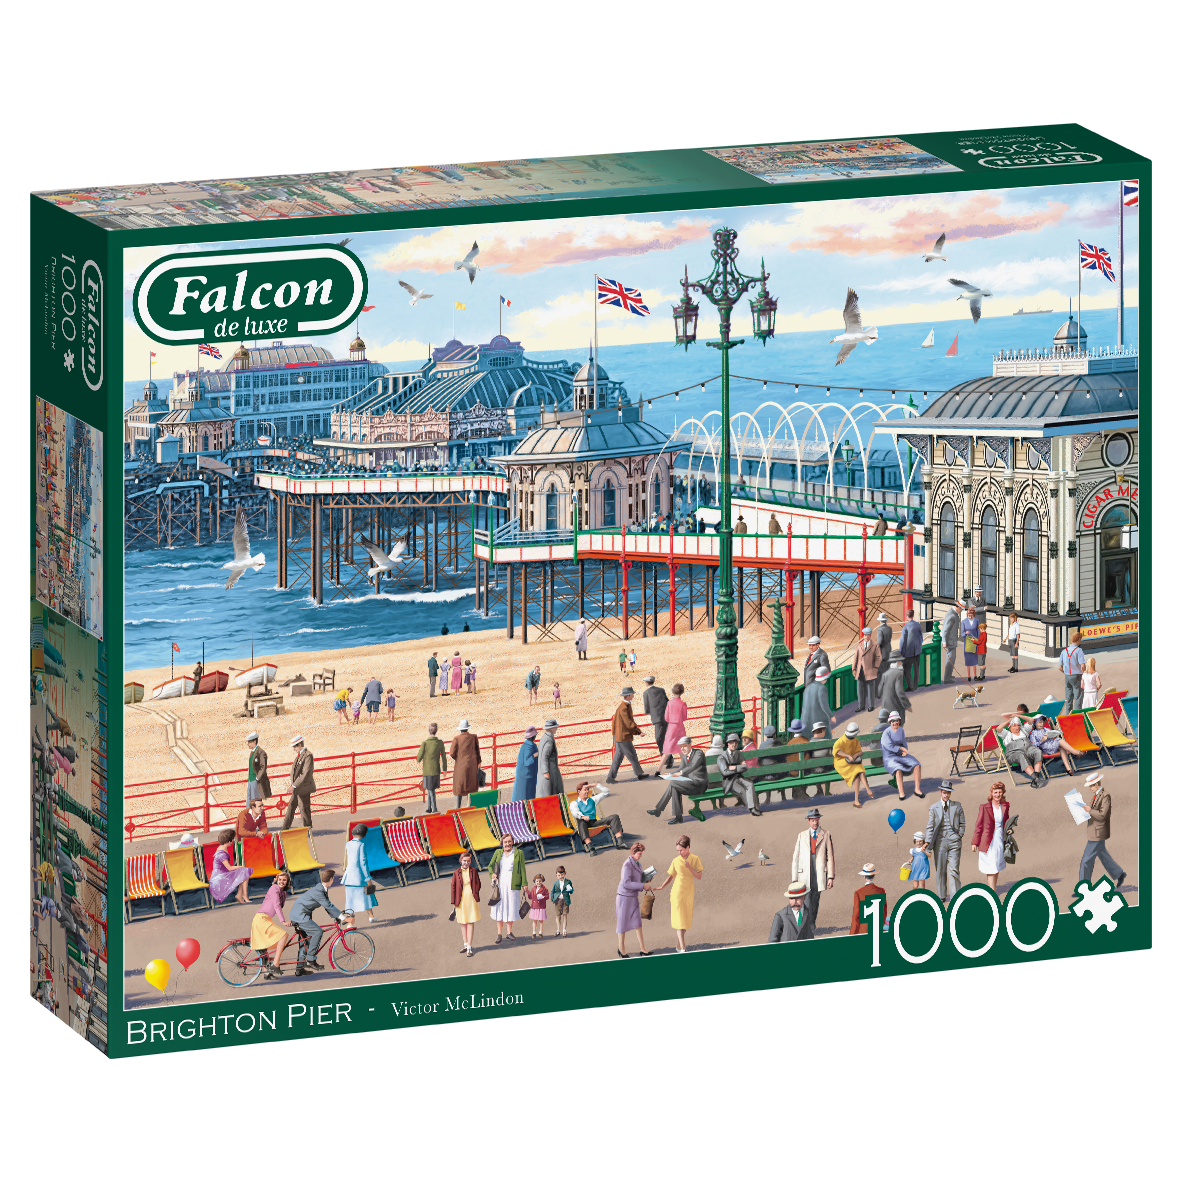 Jumbo Falcon de luxe Brighton Pier (1000 stukjes) - Legpuzzel voor volwassenen